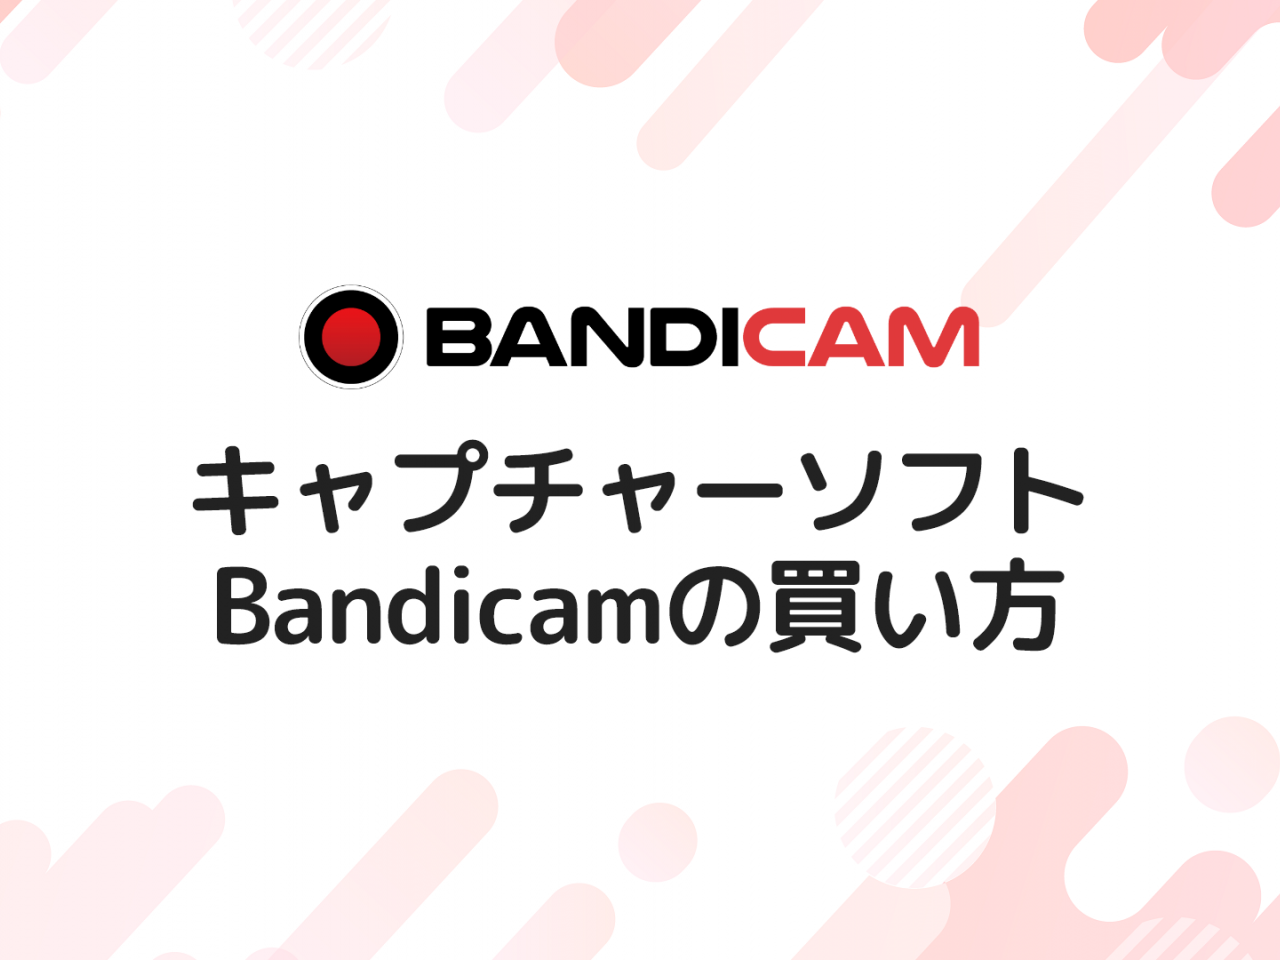 キャプチャソフト Bandicam の買い方を画像付きで解説する 全4ステップ